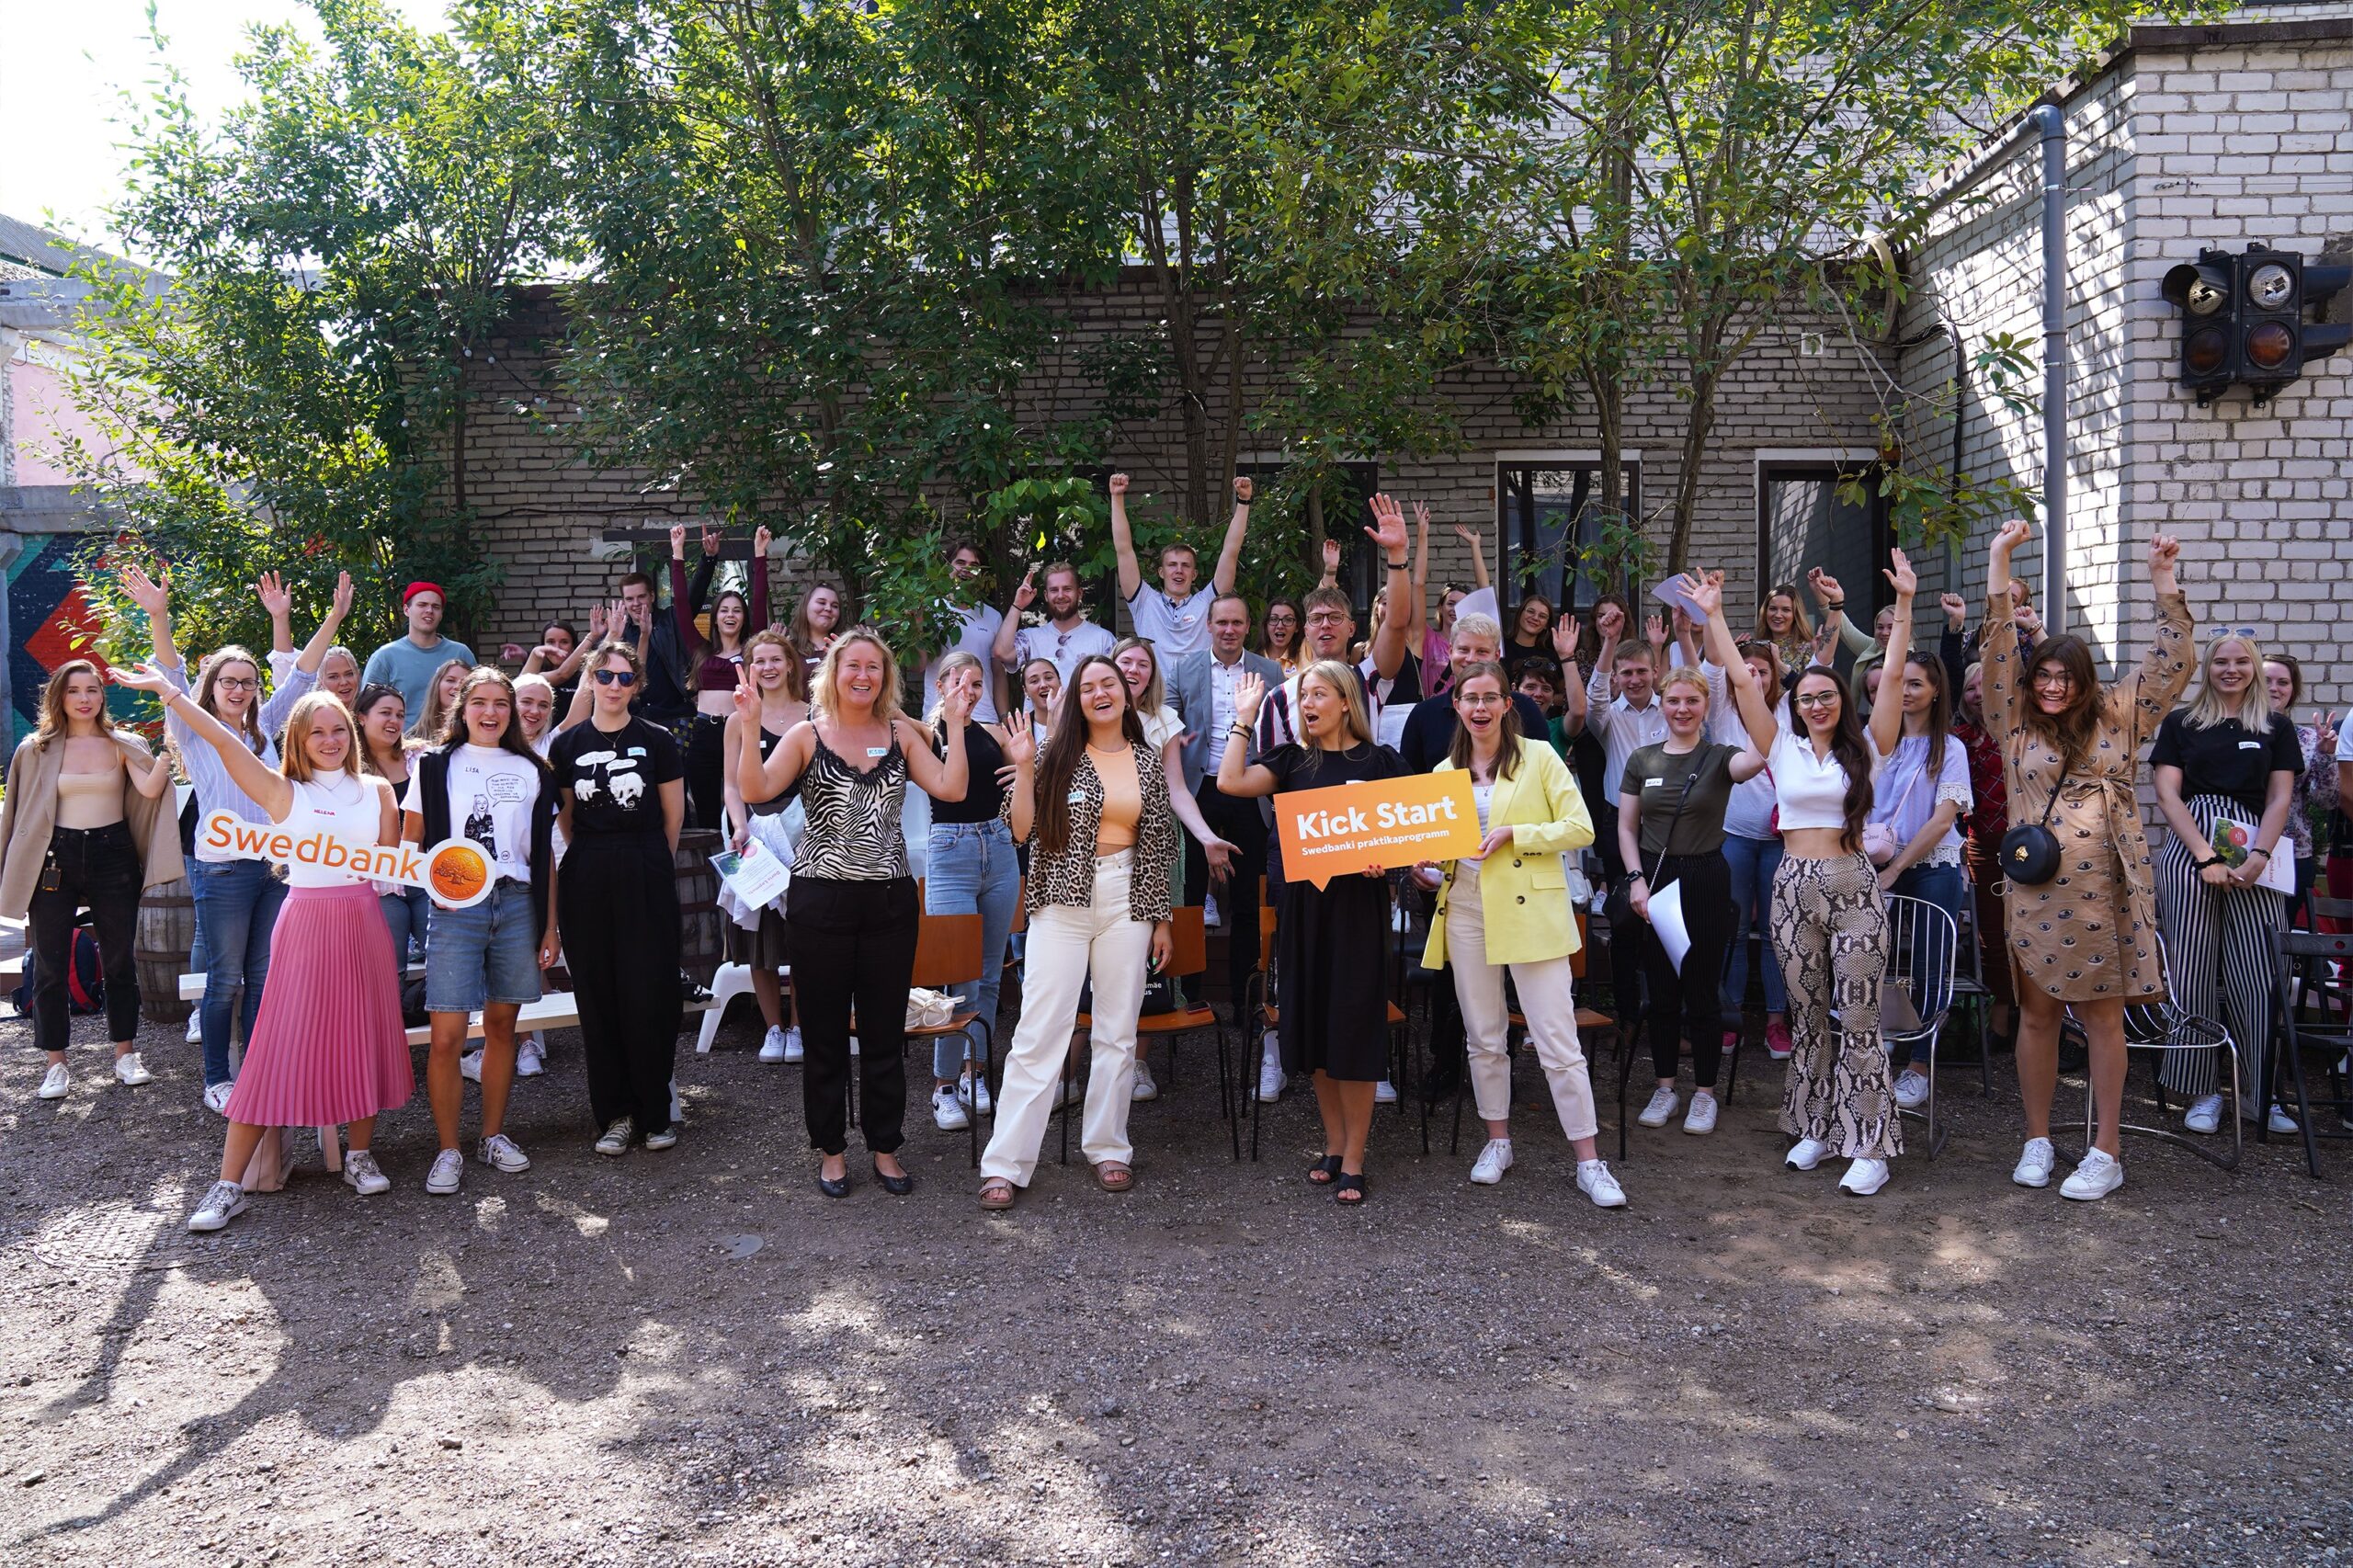 Swedbanki praktikaprogrammis Kick Start Your Career osales tänavu üle 120 inimese